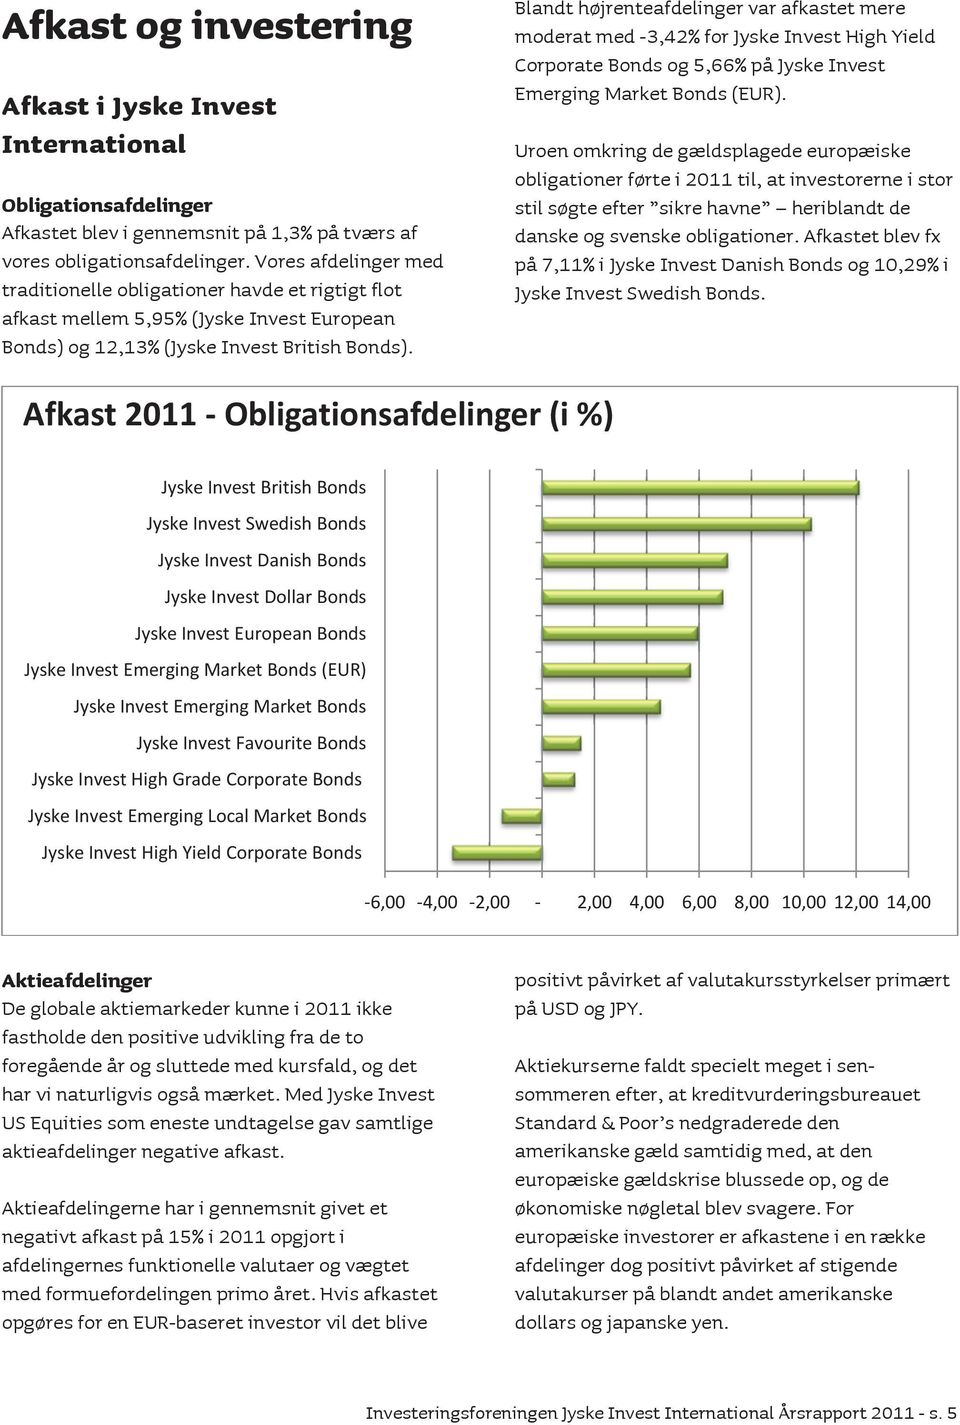 Blandt højrenteafdelinger var afkastet mere moderat med -3,42% for Jyske Invest High Yield Corporate Bonds og 5,66% på Jyske Invest Emerging Market Bonds (EUR).